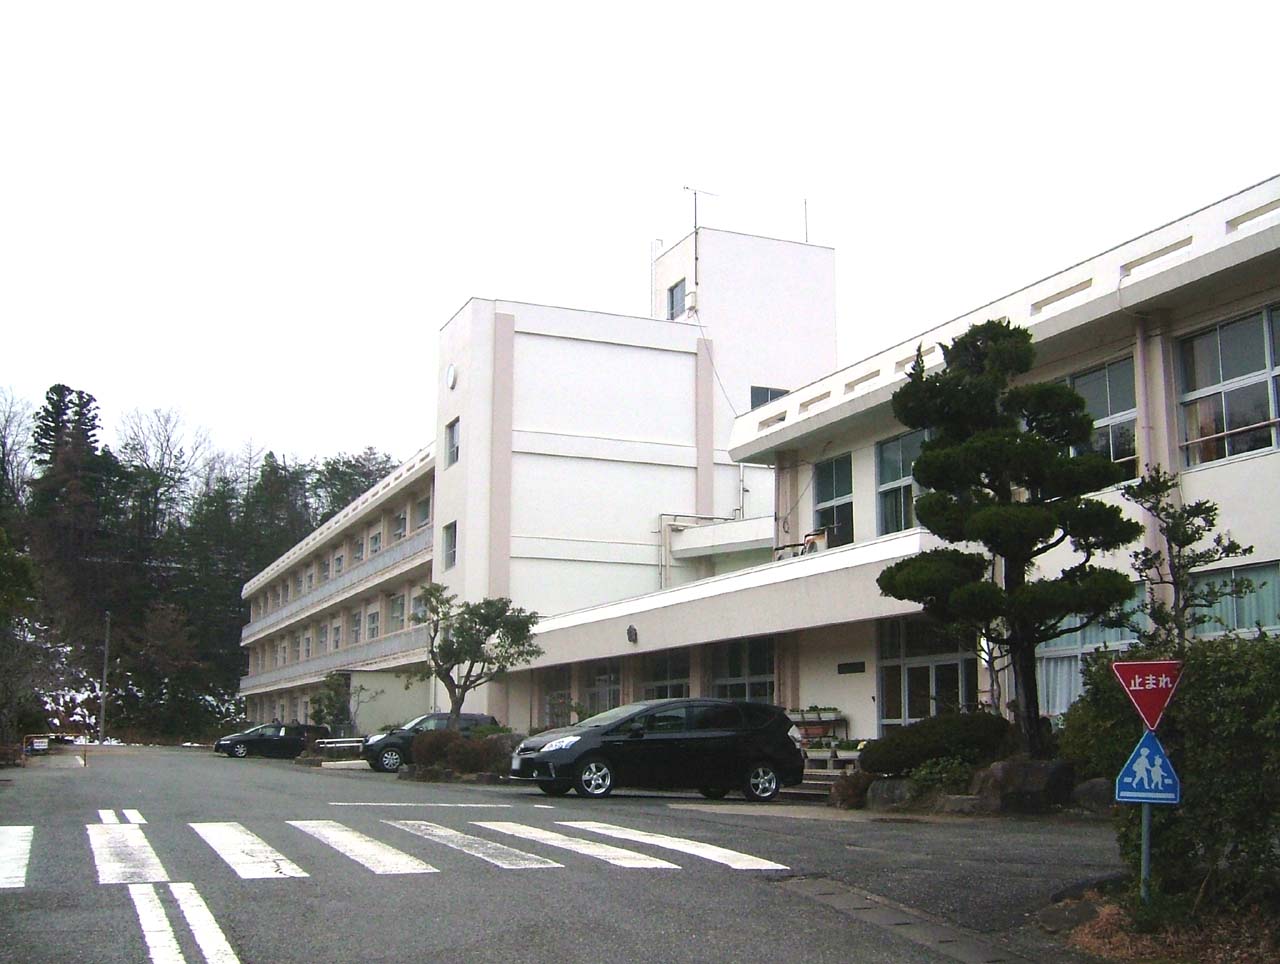 Primary school. Toyooka City Gosho to elementary school (elementary school) 1189m